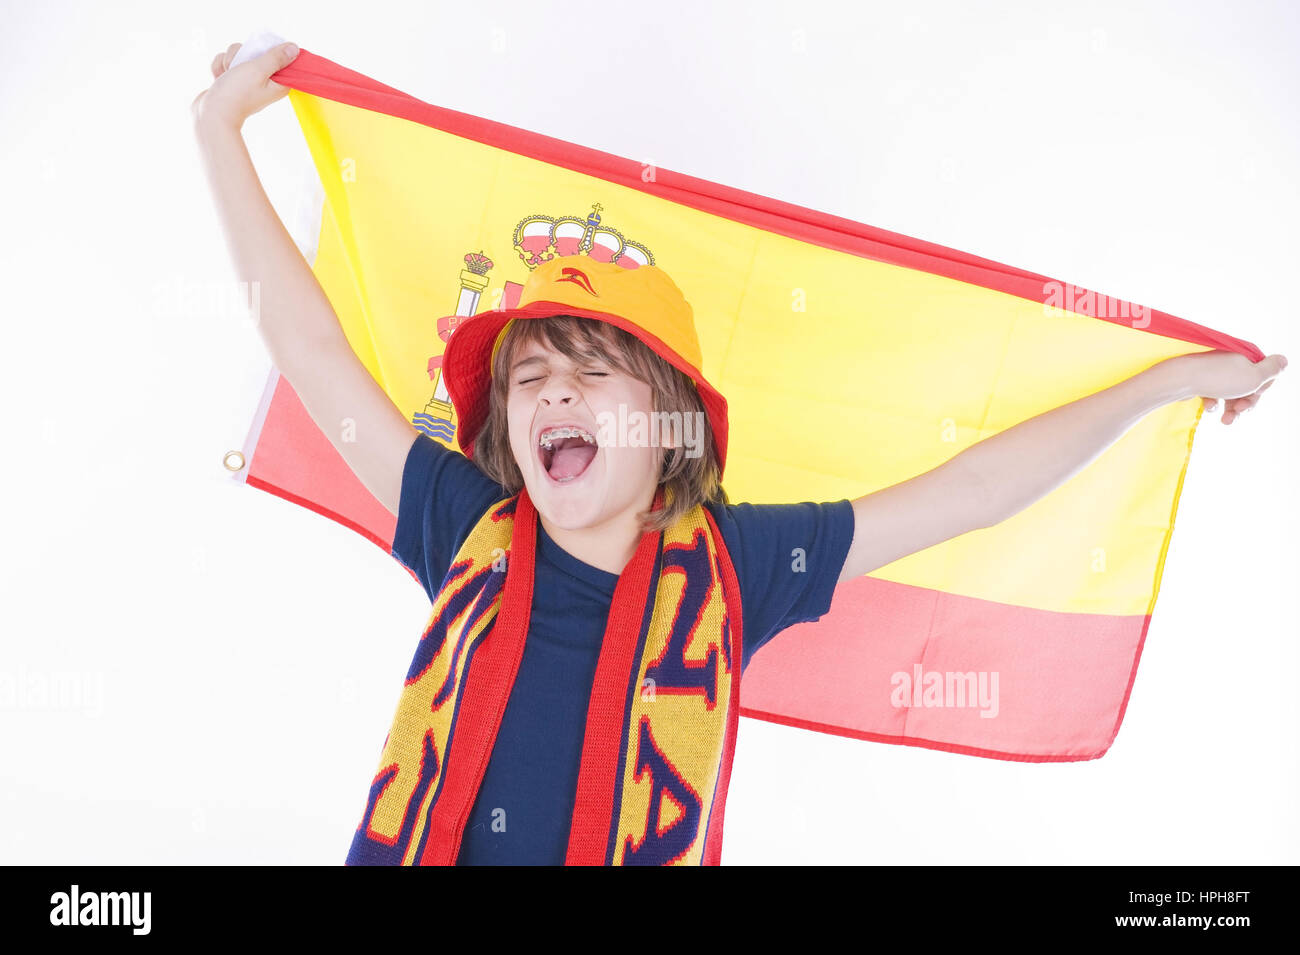 Spanischer Fussballfan - spagnolo tifoso di calcio, Modello rilasciato Foto Stock